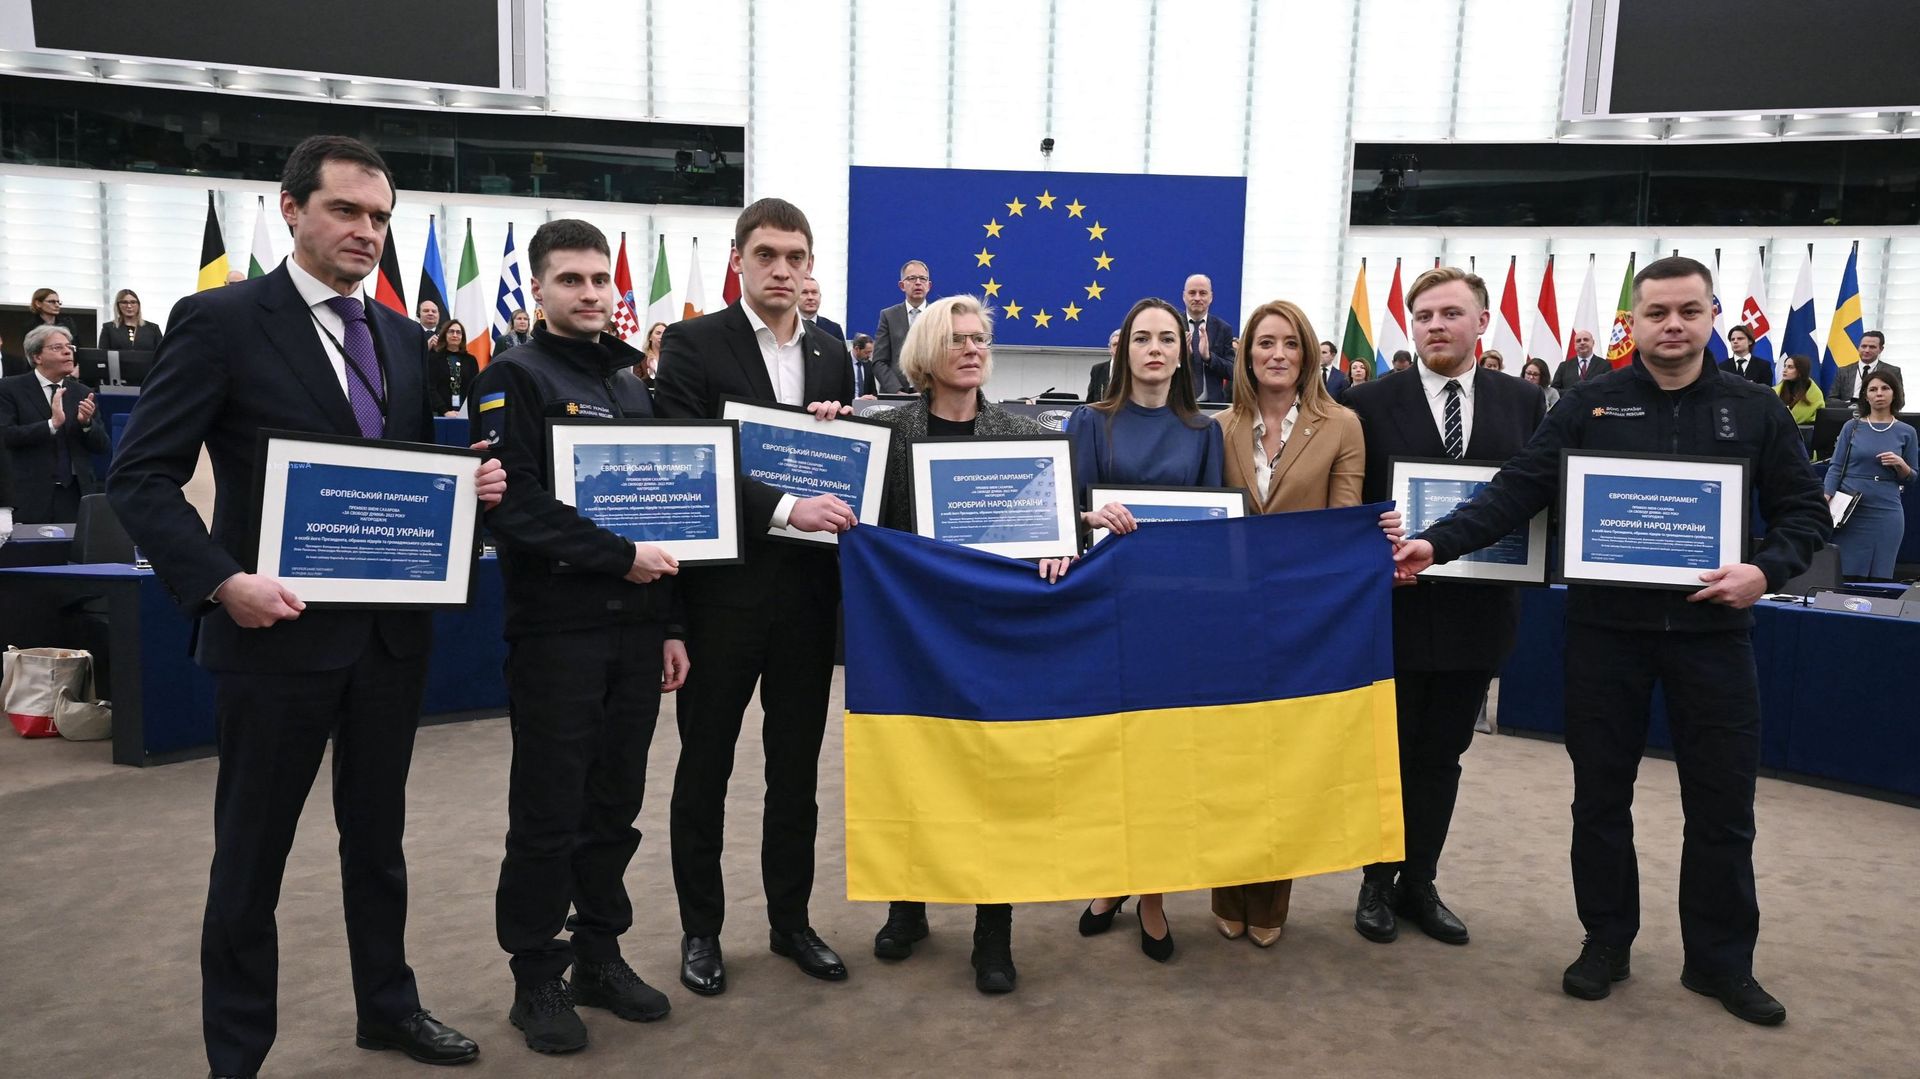 Les représentants du peuple ukrainien (de gauche à droite), le chef de la mission de l’Ukraine auprès de l’UE Vsevolod Chentsov, les services d’urgence de l’Ukraine Stanislav Kulykivskyi, le maire de la ville ukrainienne de Melitopol Ivan Fedorov, le fond